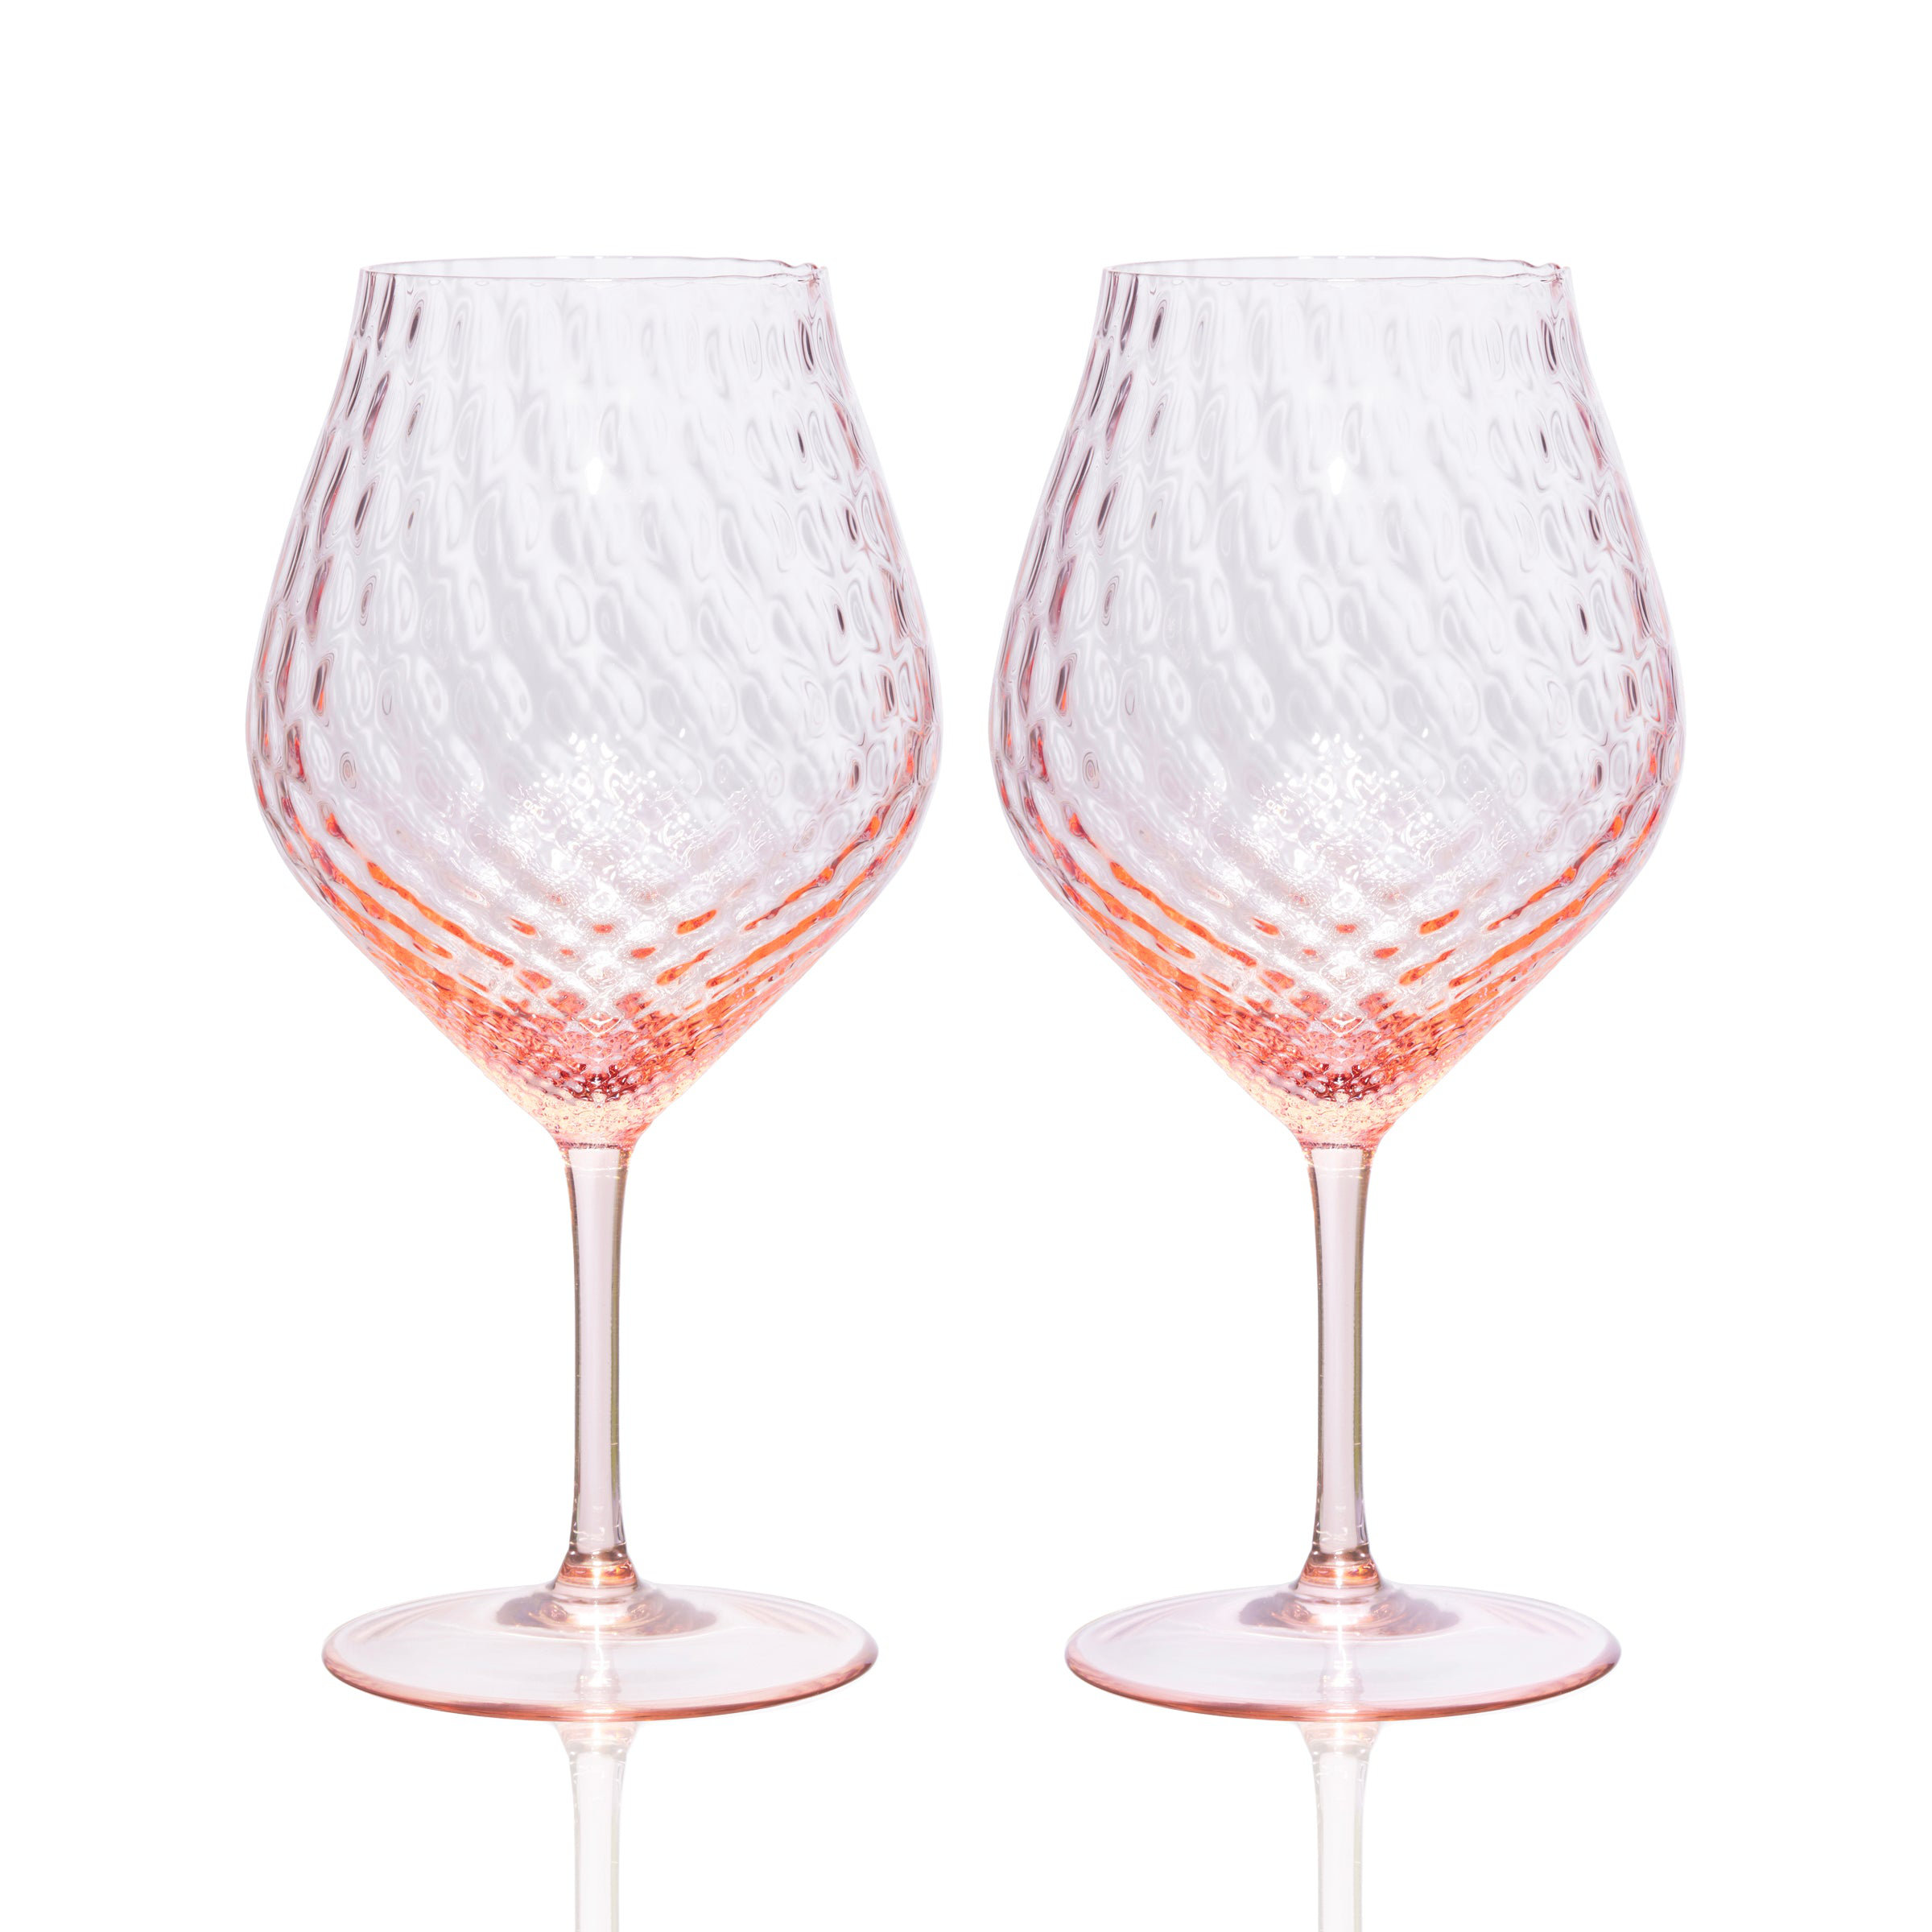 Caskata Marrakech White Wine Glasses Set of 2